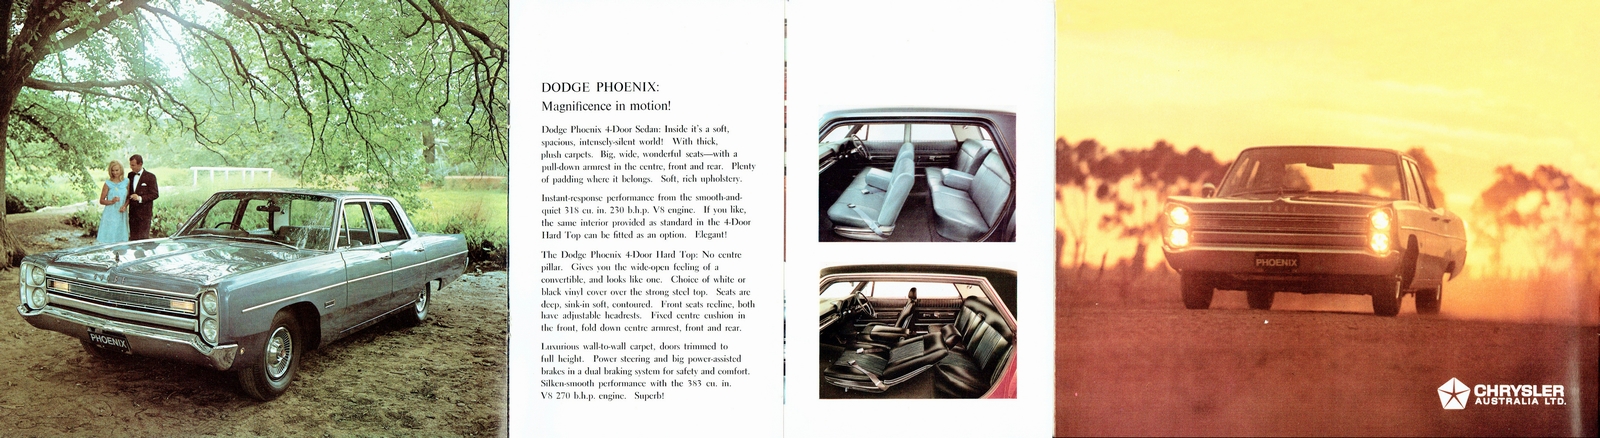 n_1968 Dodge Phoenix-06-07-10.jpg